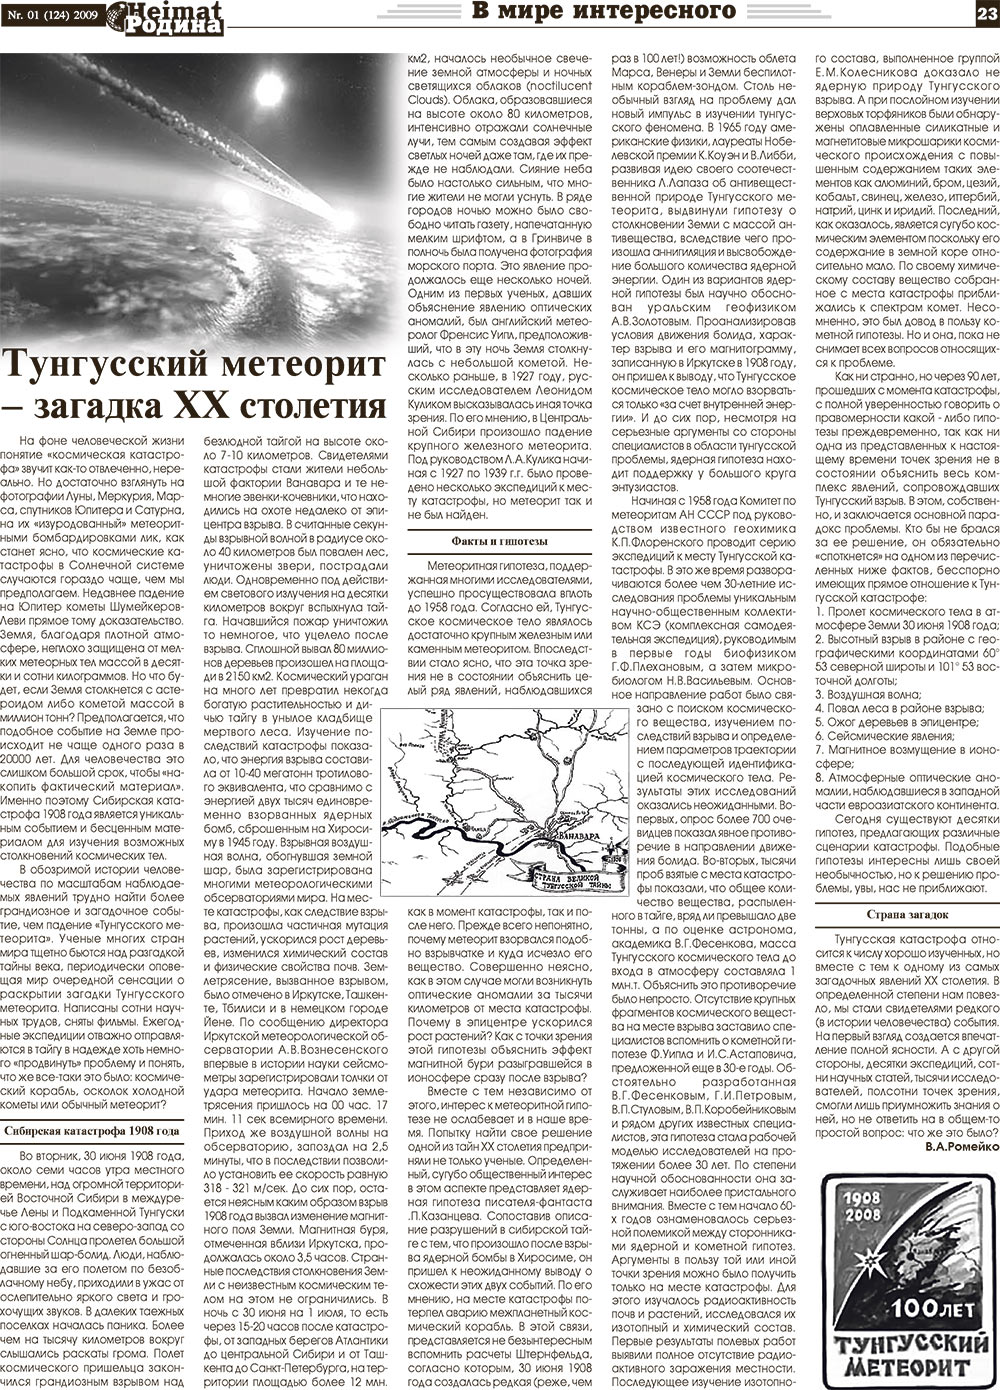 Heimat-Родина (газета). 2009 год, номер 1, стр. 23